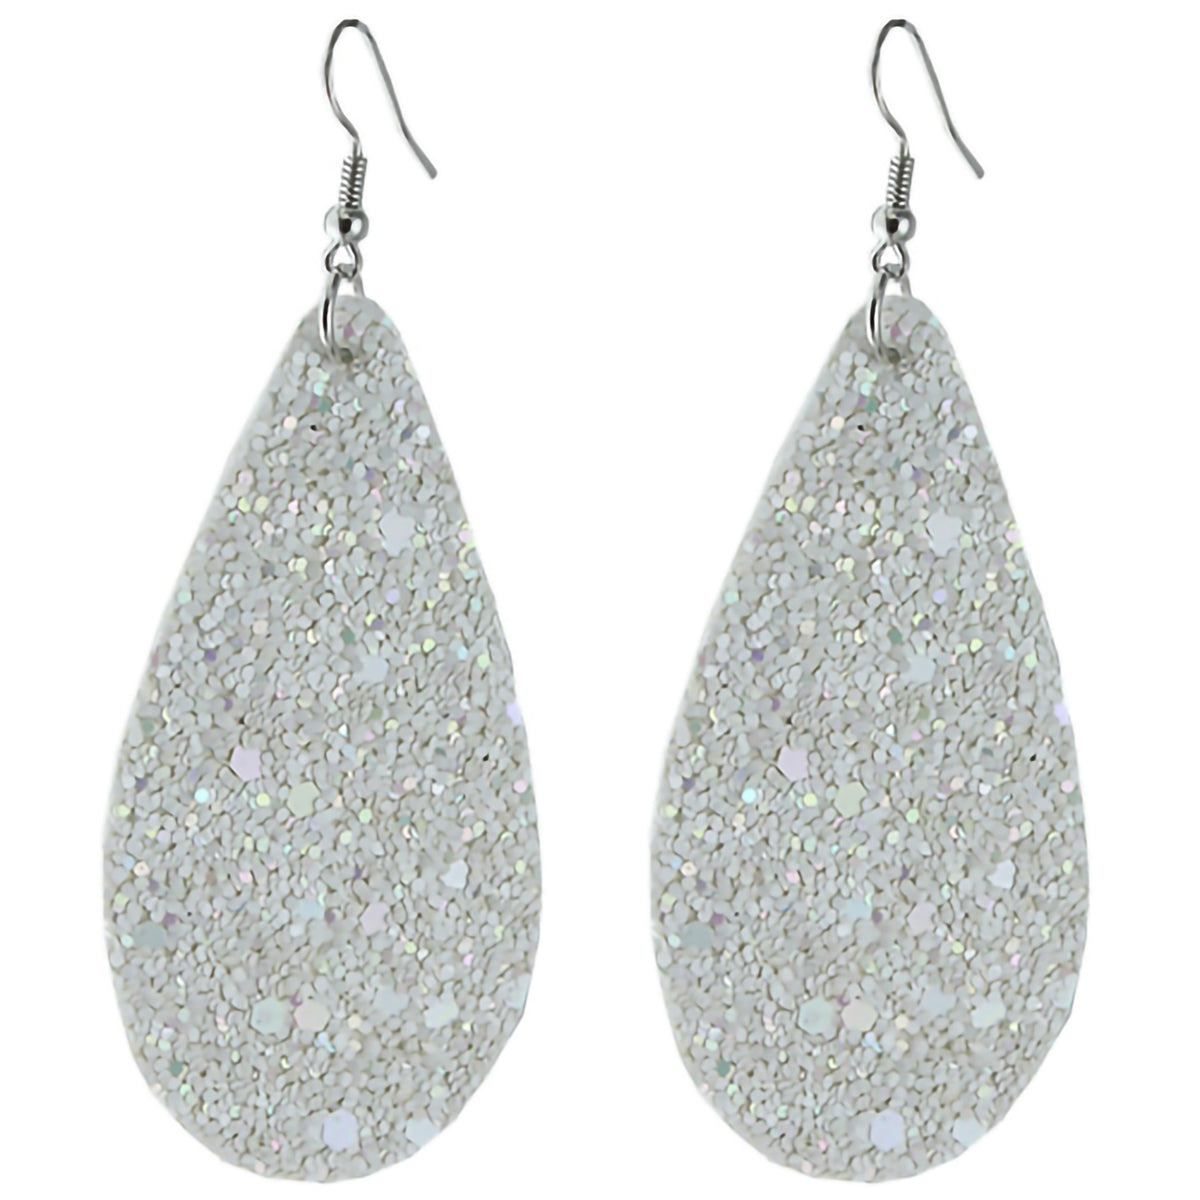 73459 - Glitter Tear Drop Earring - White - Fashion Jewelry Wholesale